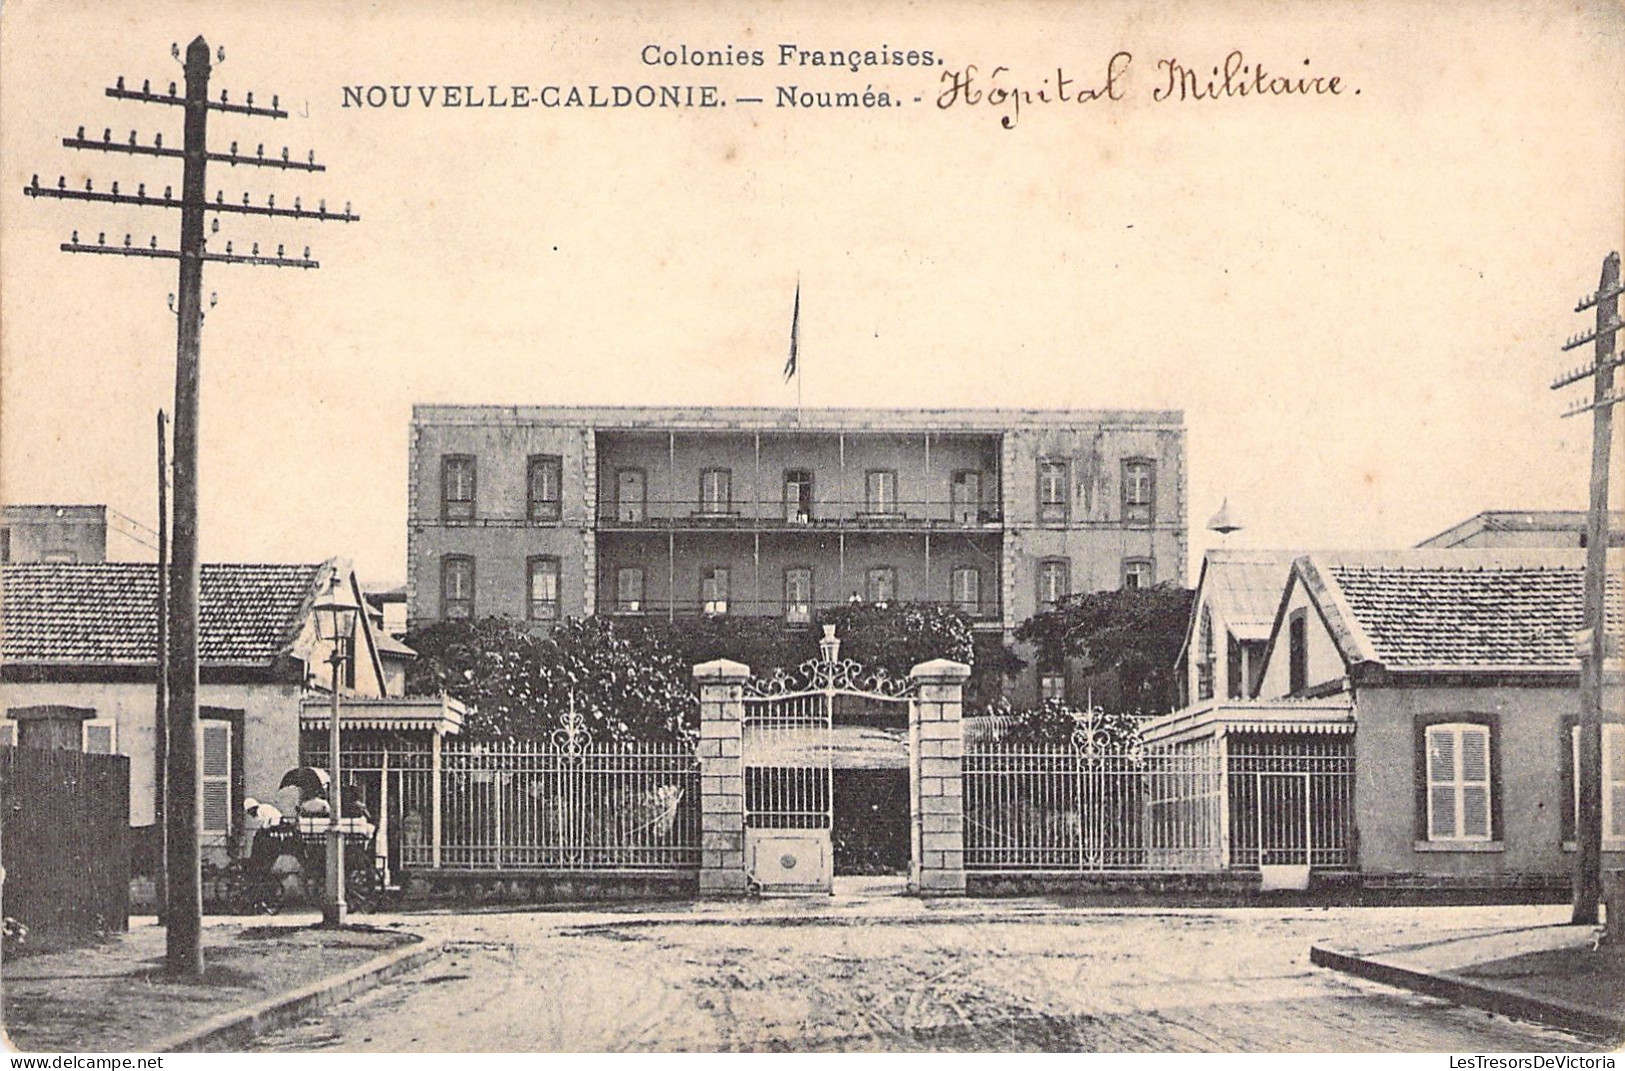 NOUVELLE CALEDONIE - NOUMEA - Hopital Militaire - Carte Postale Ancienne - Nieuw-Caledonië